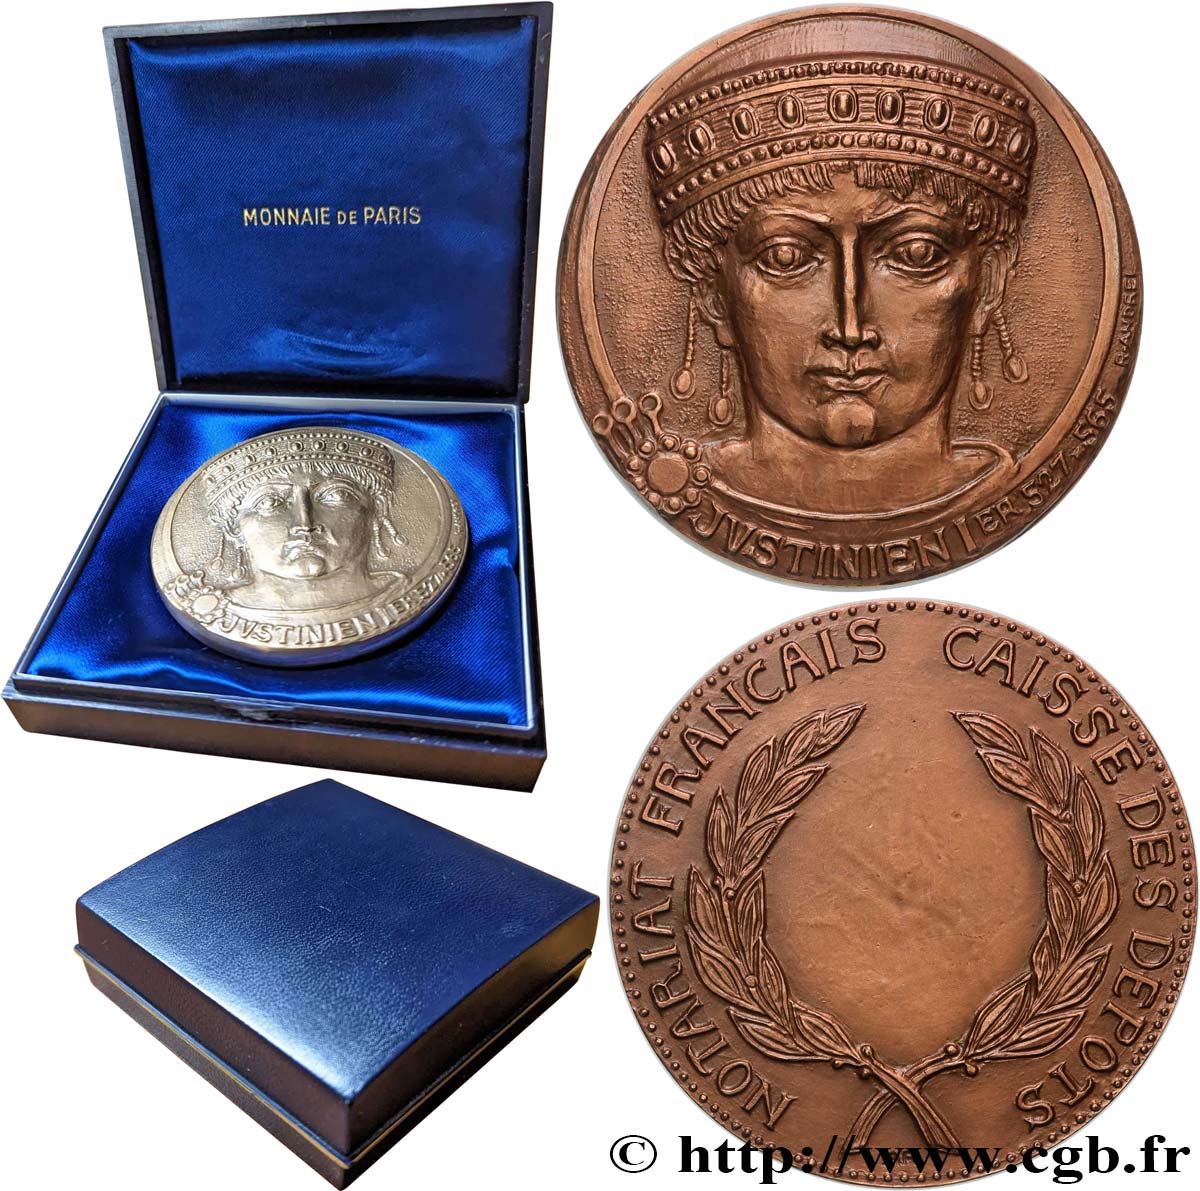 19TH CENTURY NOTARIES (SOLICITORS AND ATTORNEYS) Médaille, Justinien Ier, Caisse des dépôts AU